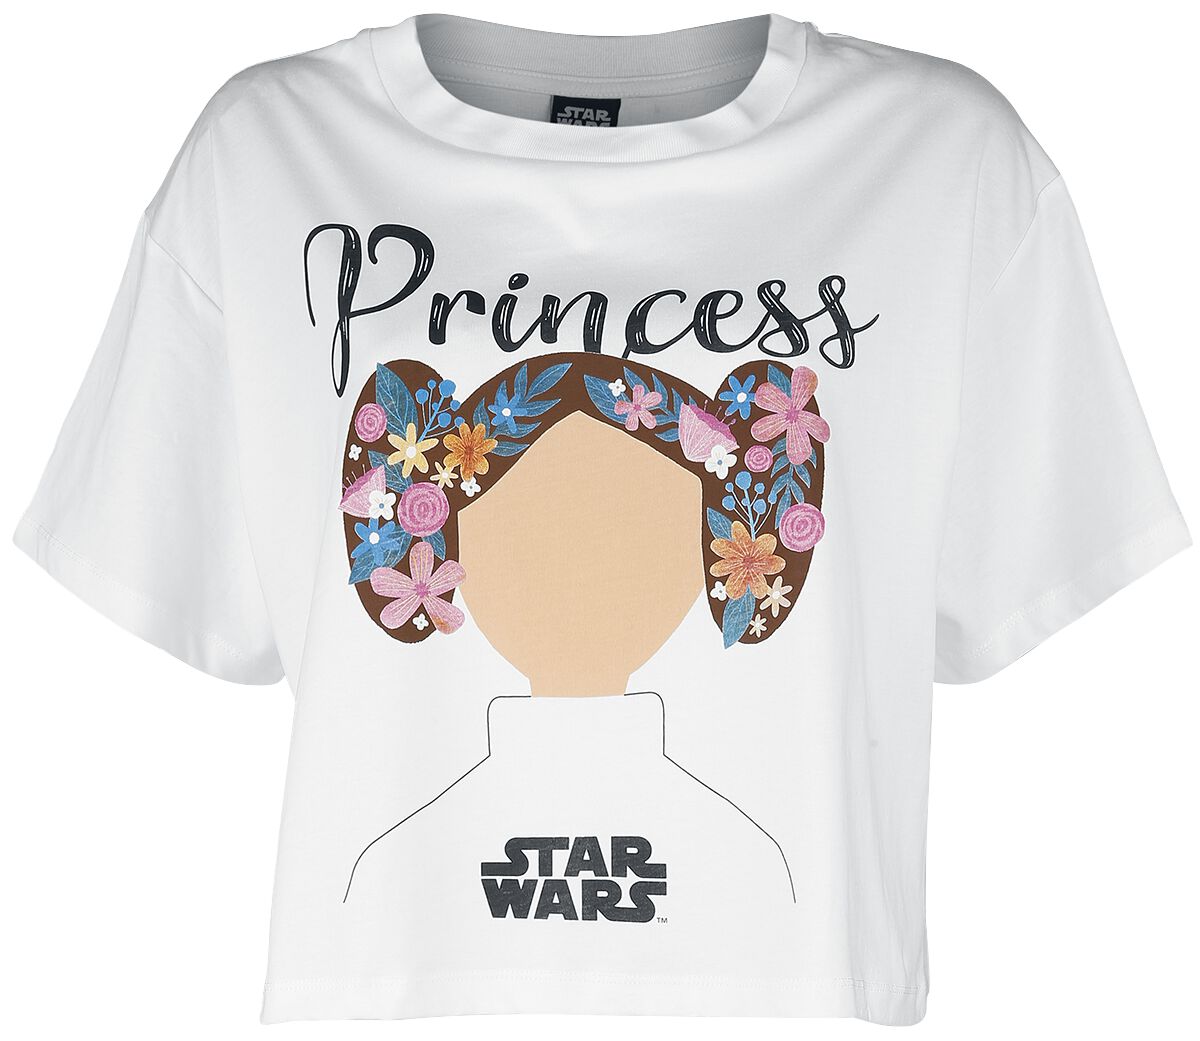 Star Wars Star Wars - Princess Lea T-Shirt weiß in S